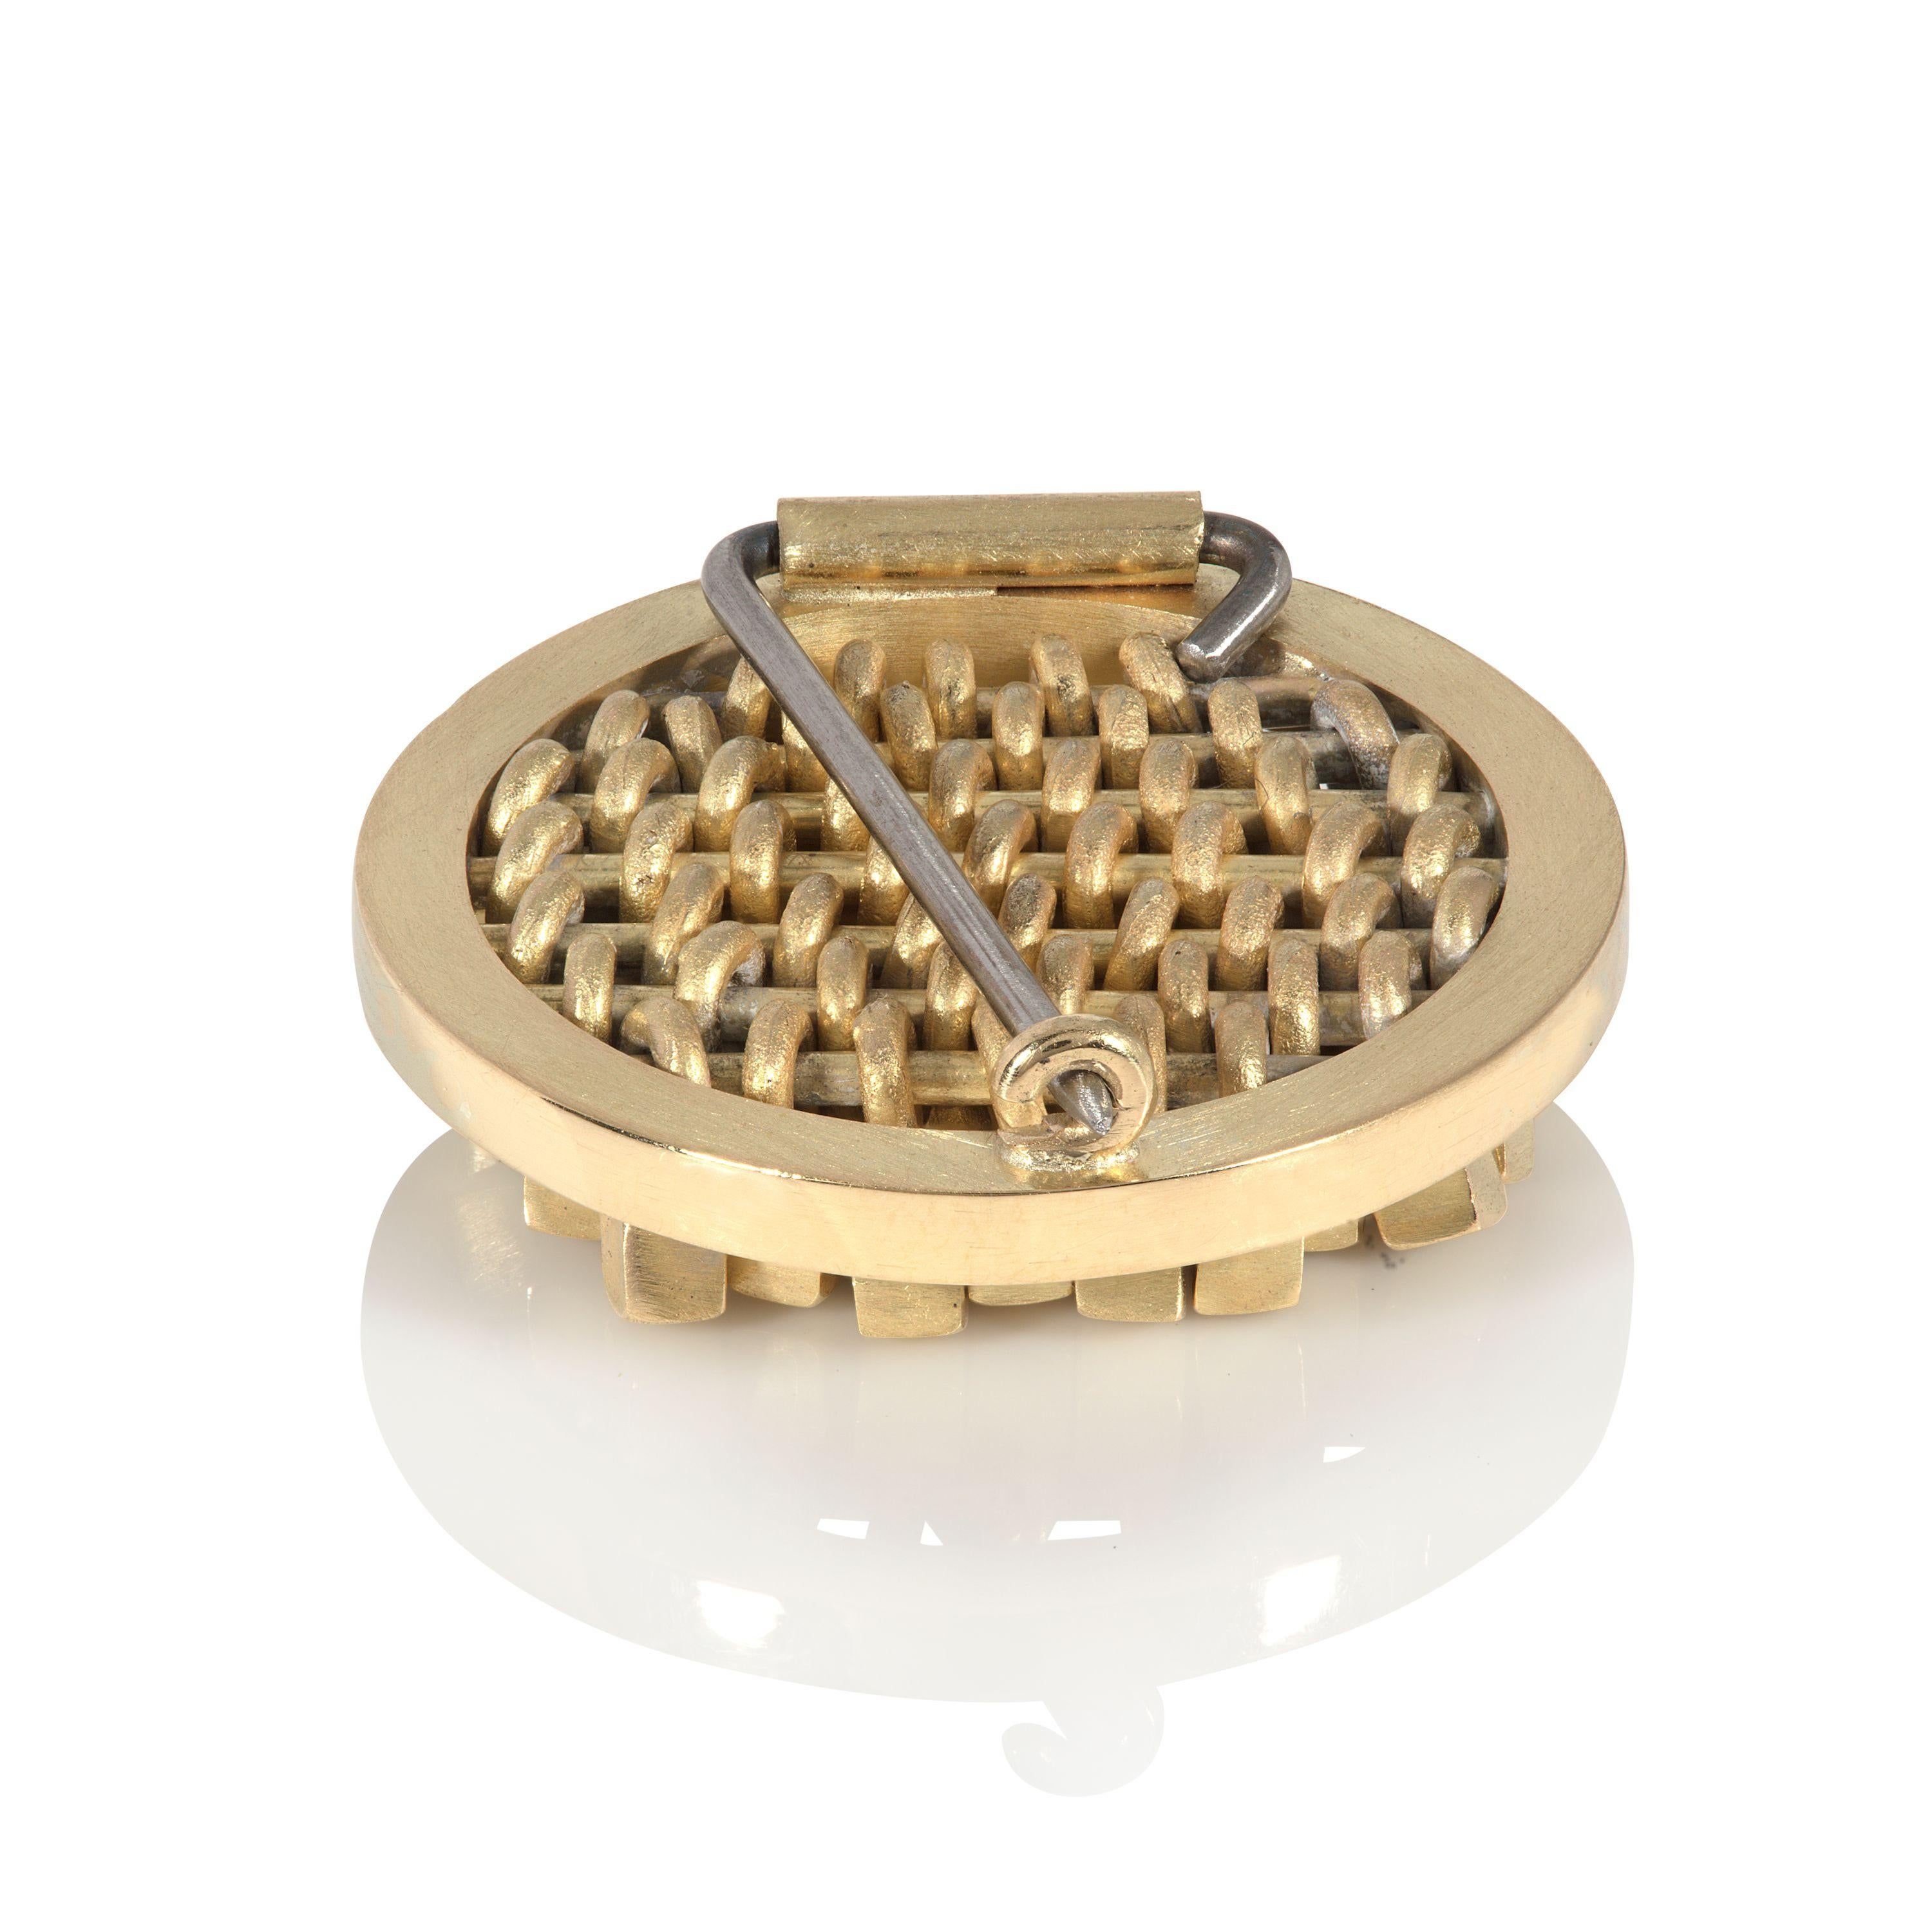 Este elegante y llamativo broche de oro de 18 quilates ha sido diseñado y fabricado por la joyera británica Sarah Pulvertaft. Dentro de su sencillo marco circular, todo el broche está formado por minicubos individuales. Estos cubos móviles, cada uno